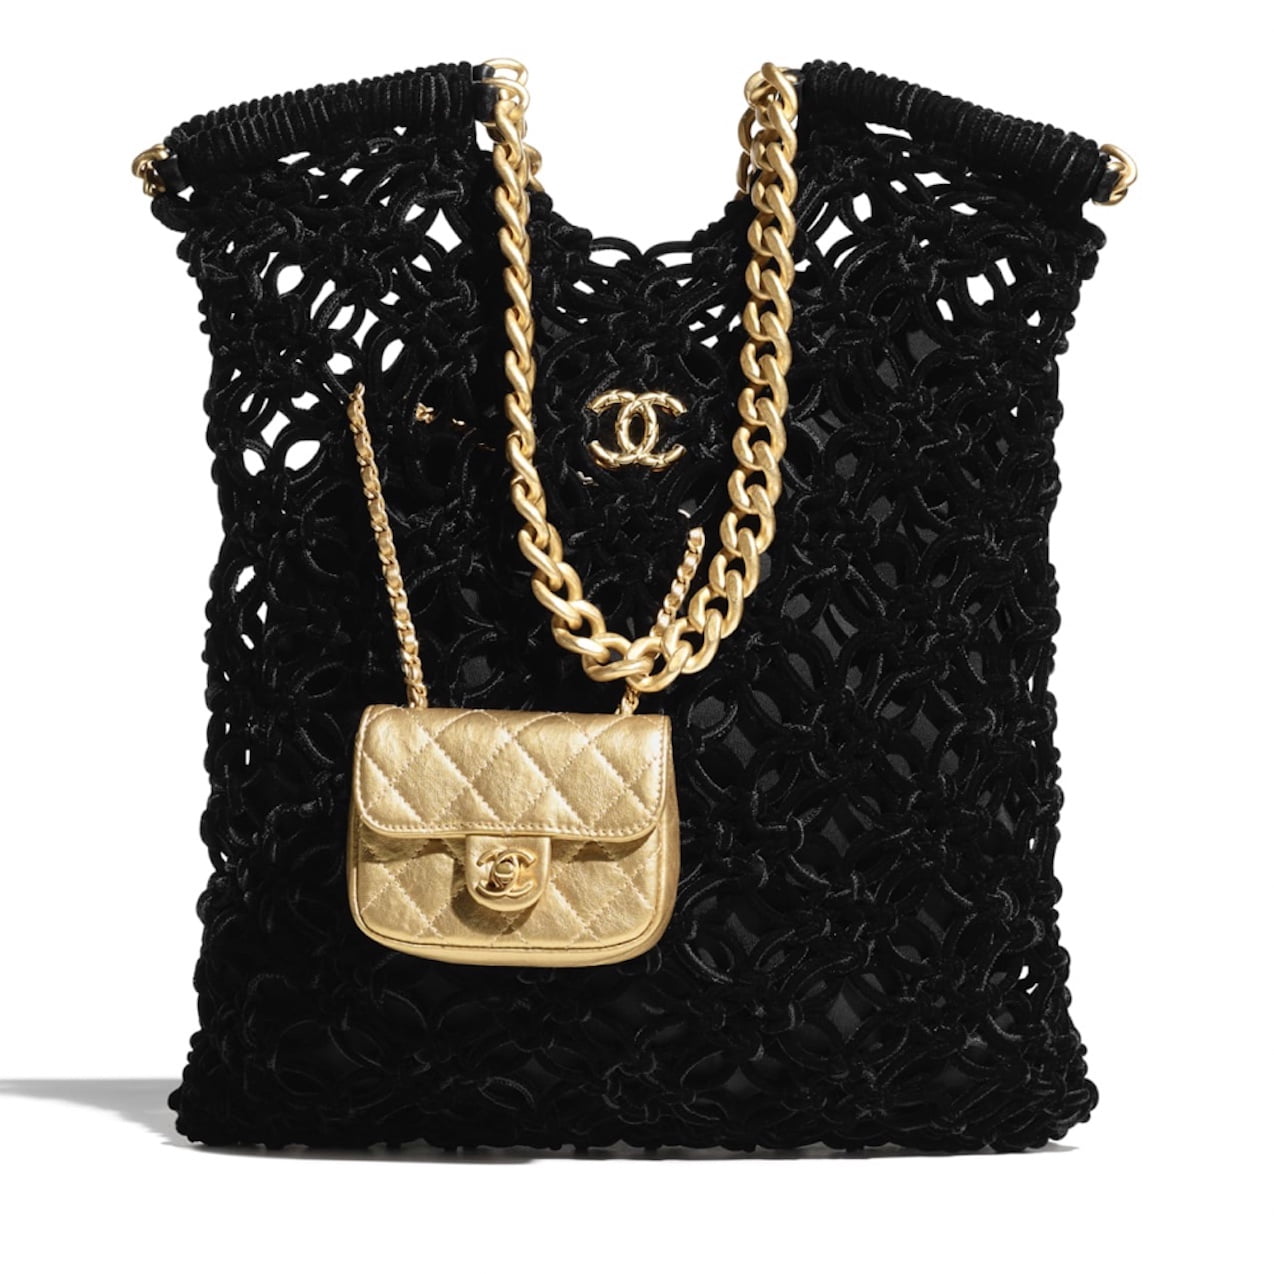 ORDER Chanel Flap Bag